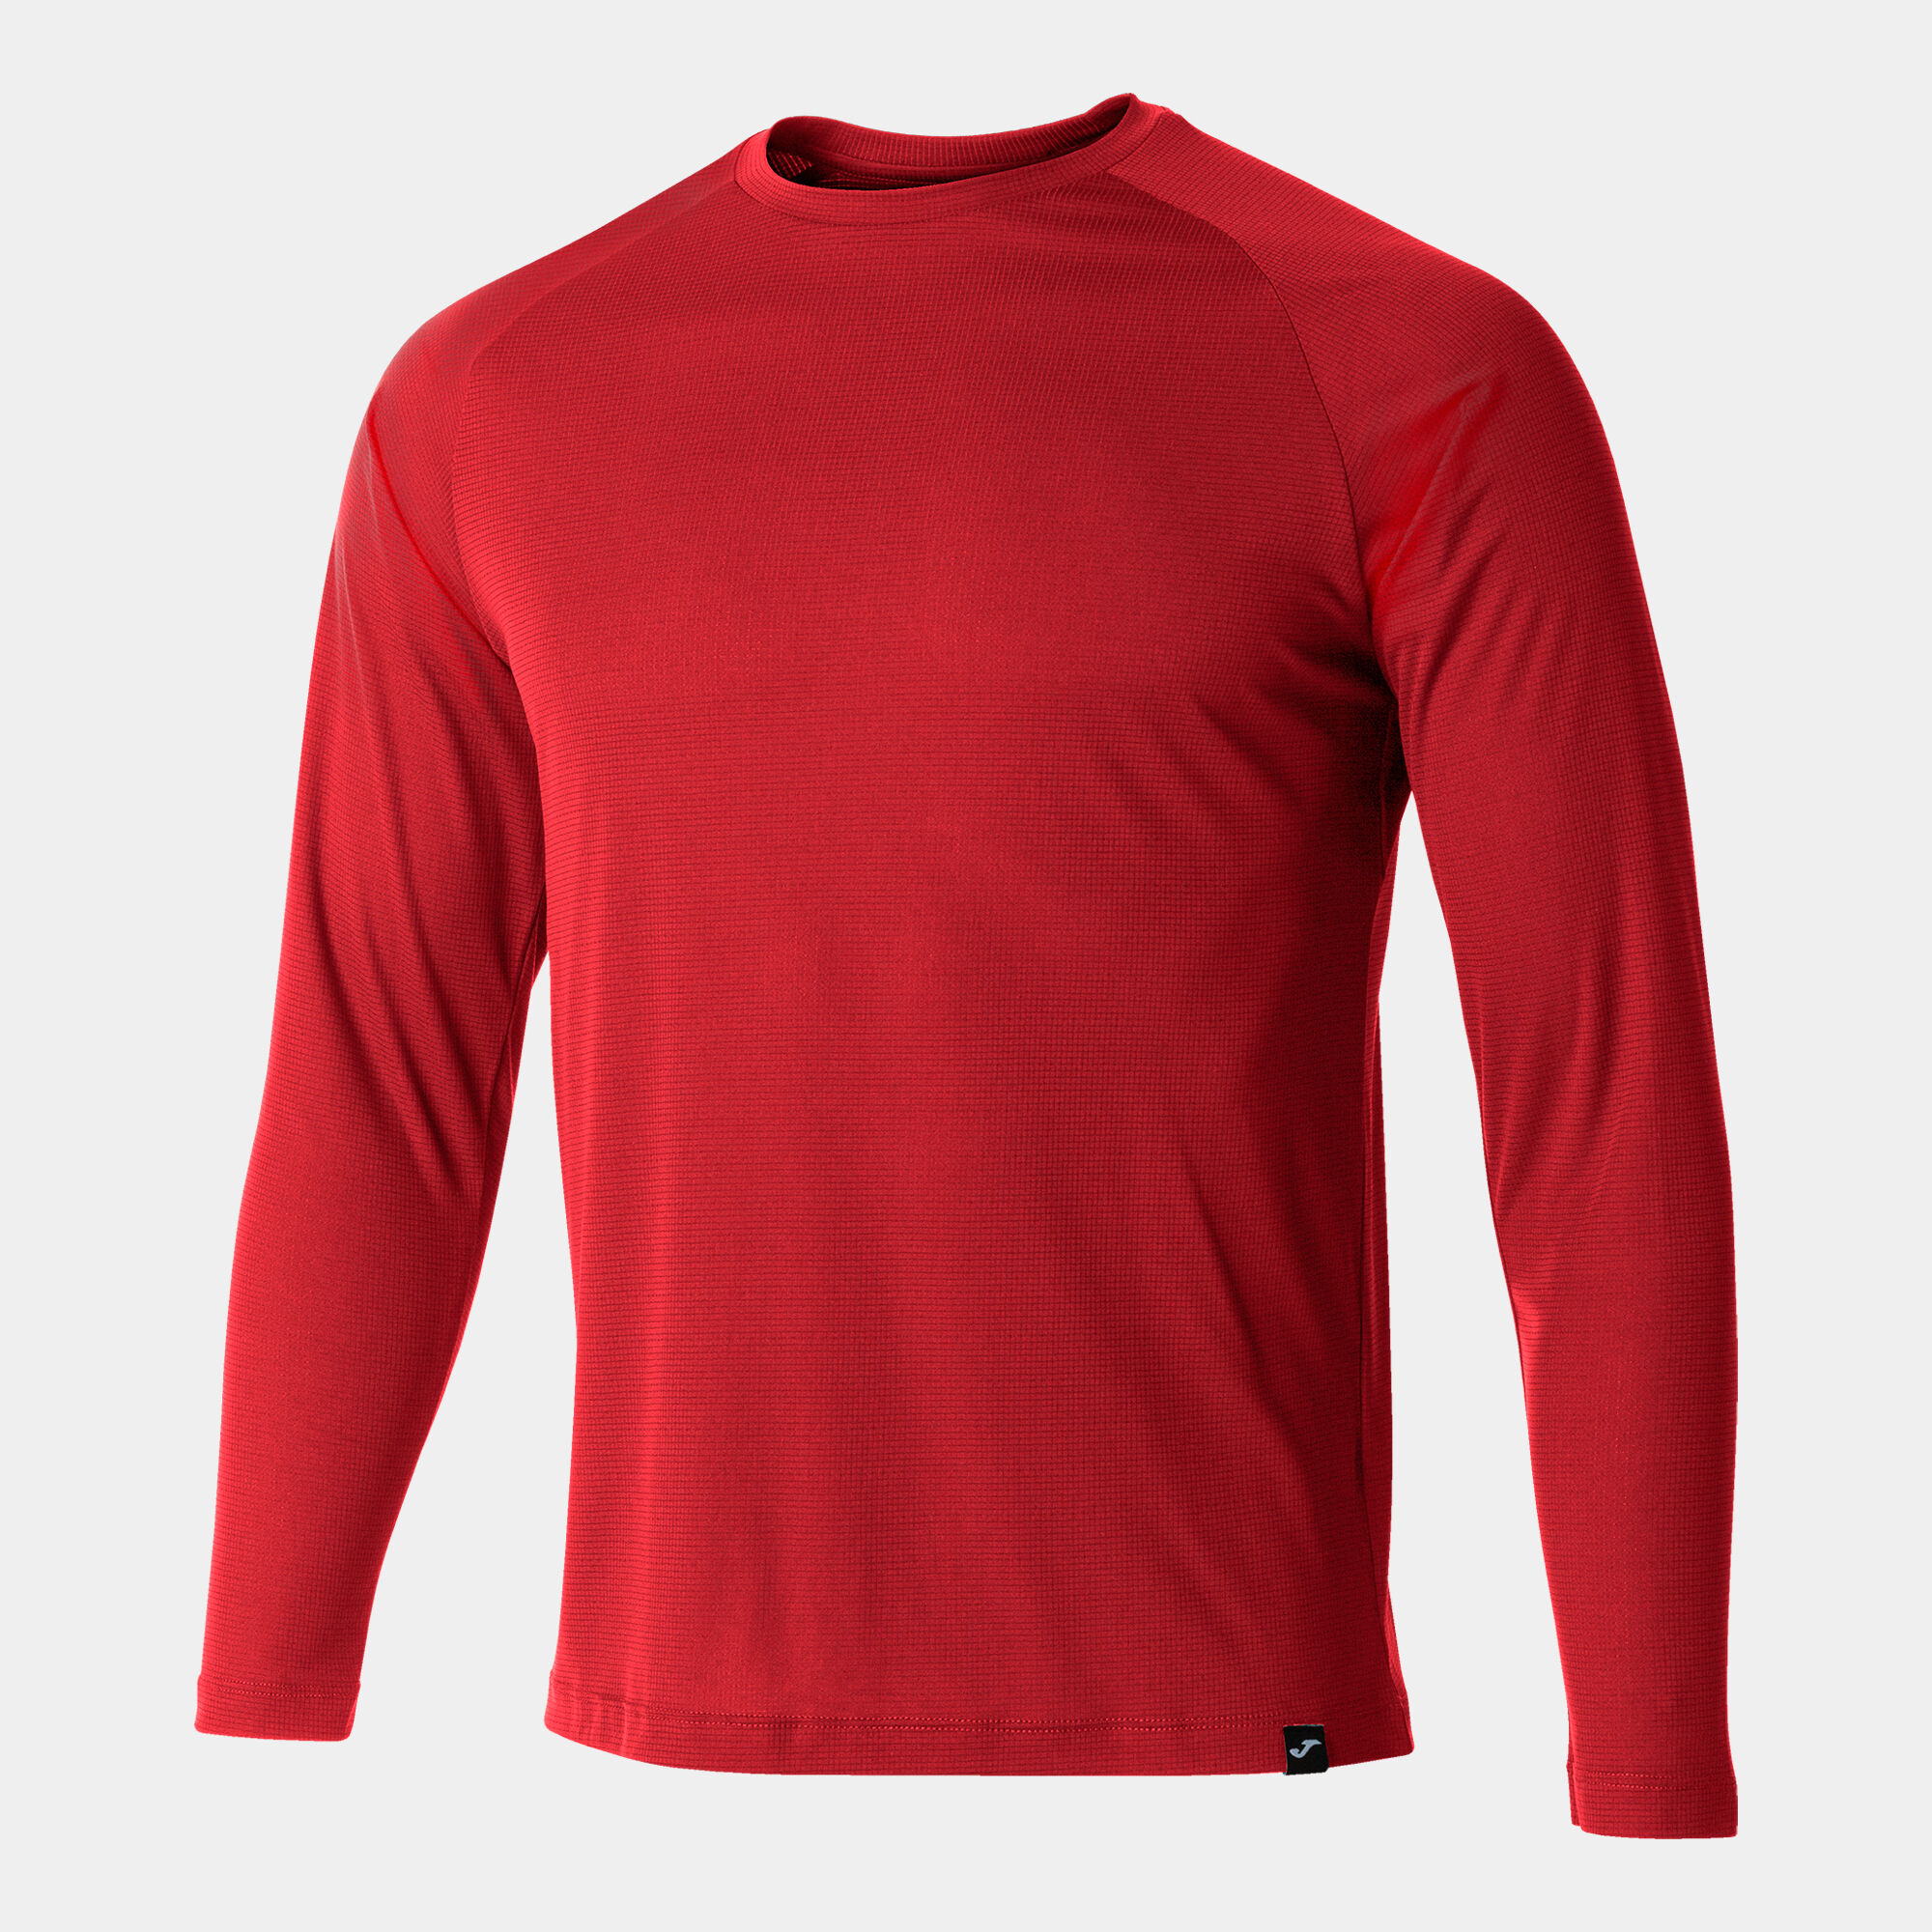 Camiseta manga larga hombre R-Combi rojo